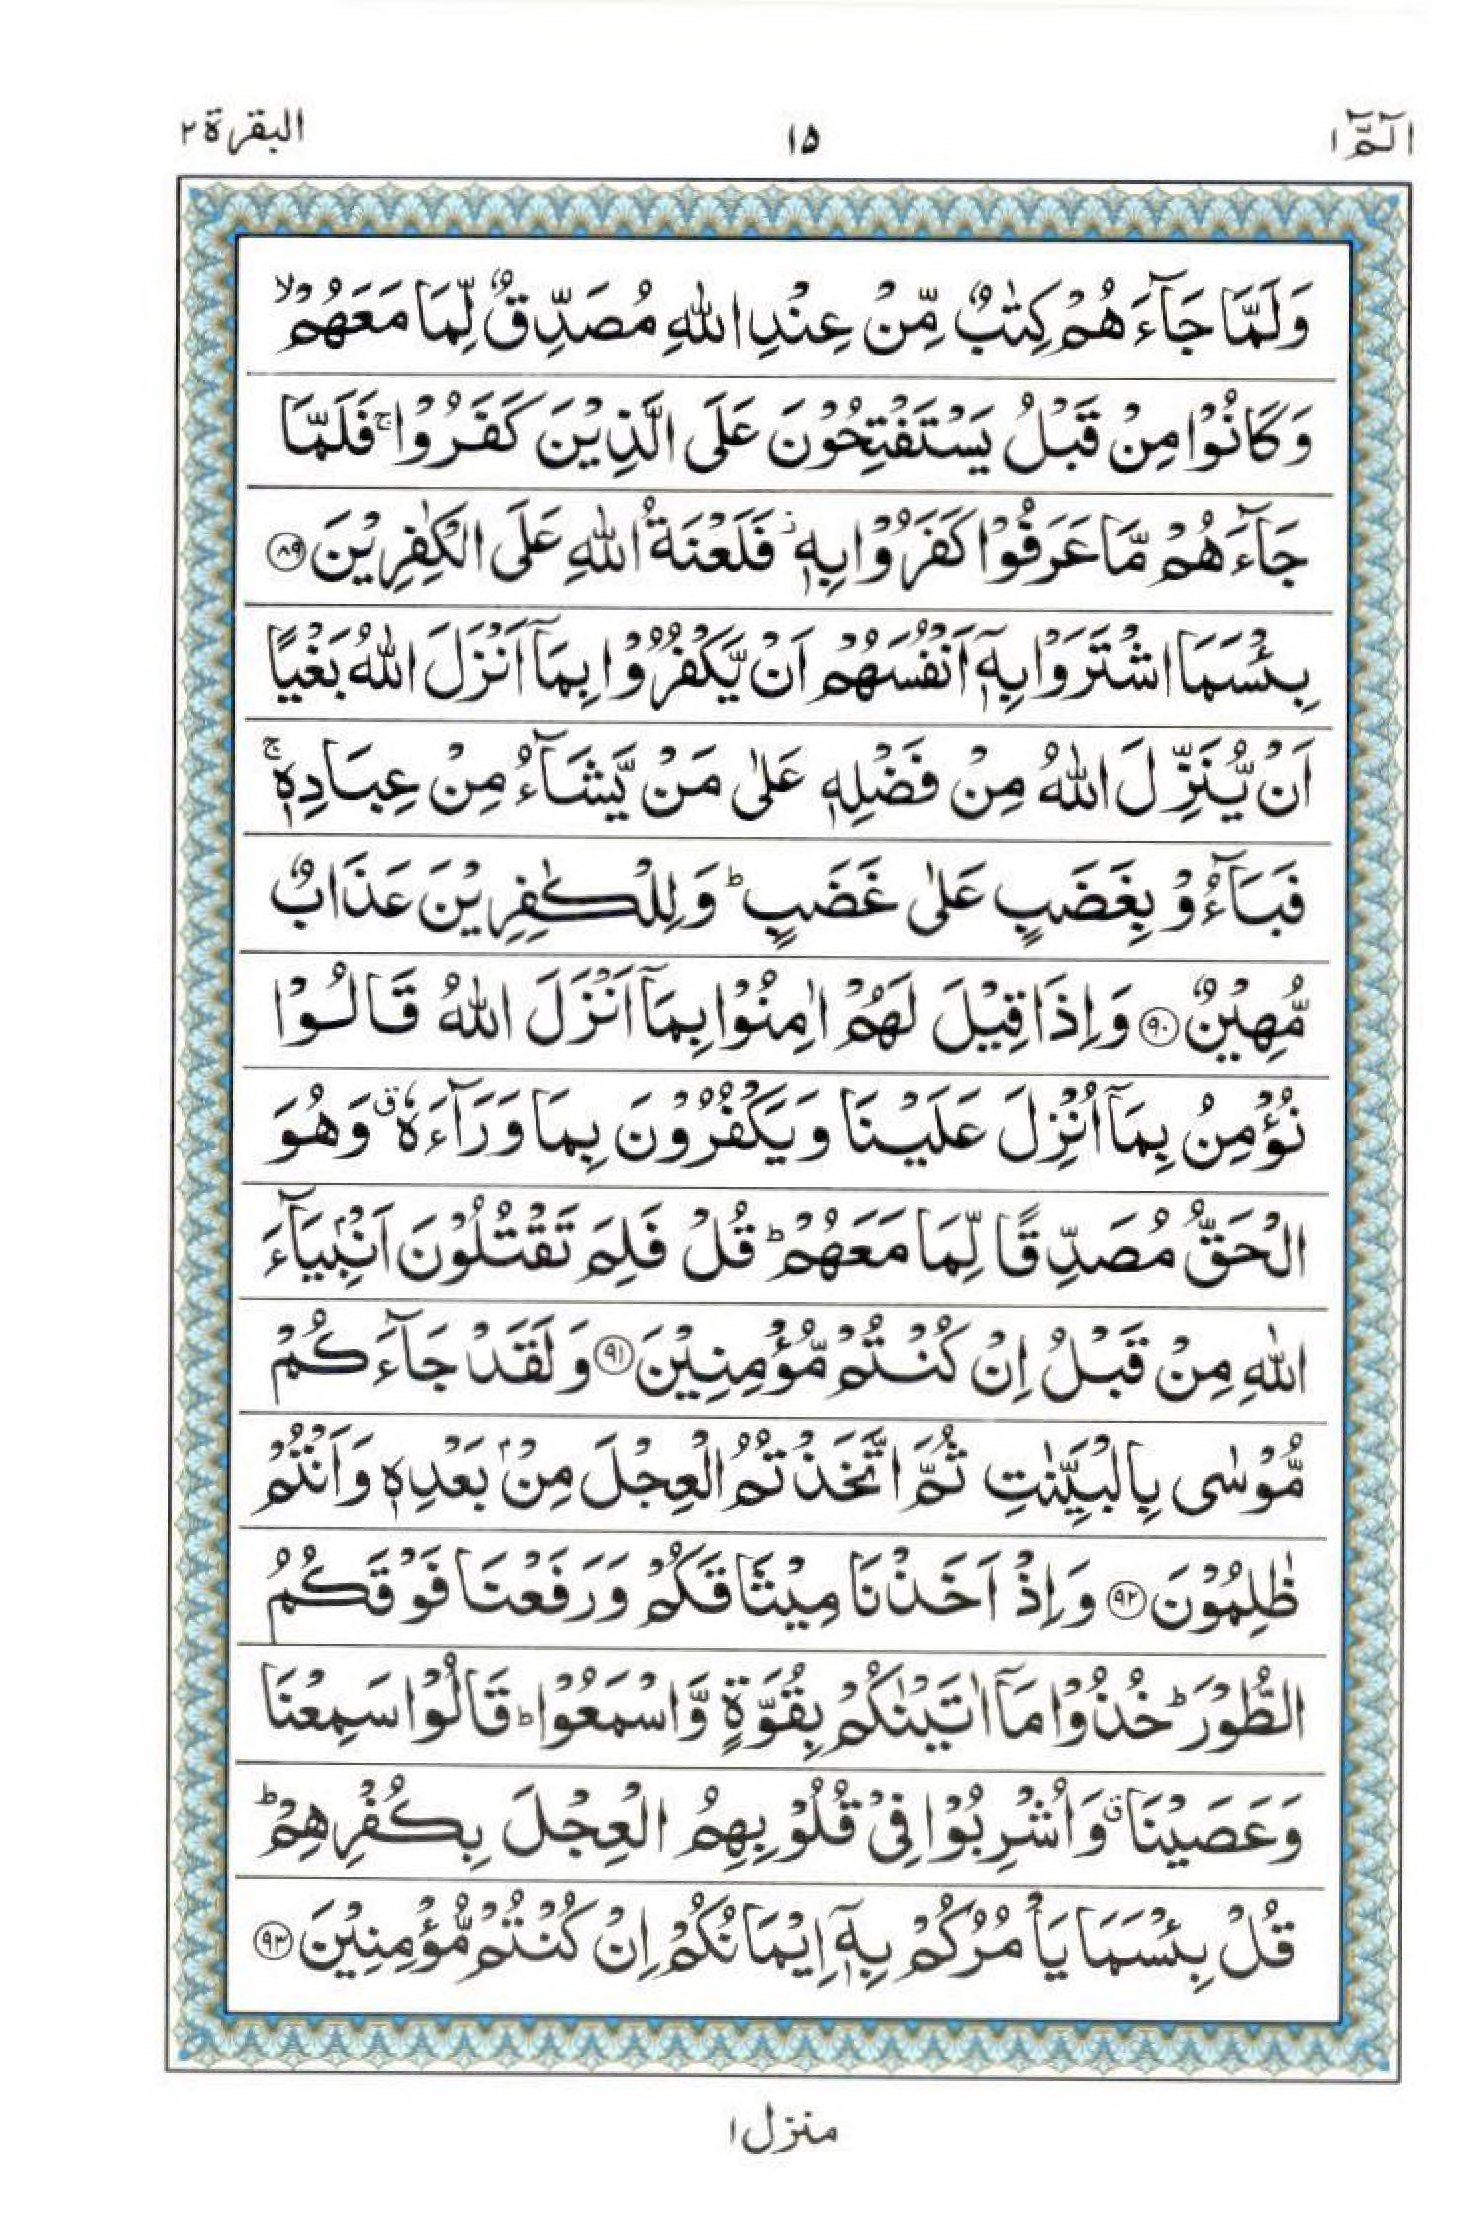 Read 15 Lines Al Quran Part 1 Page No 15, Practice Quran